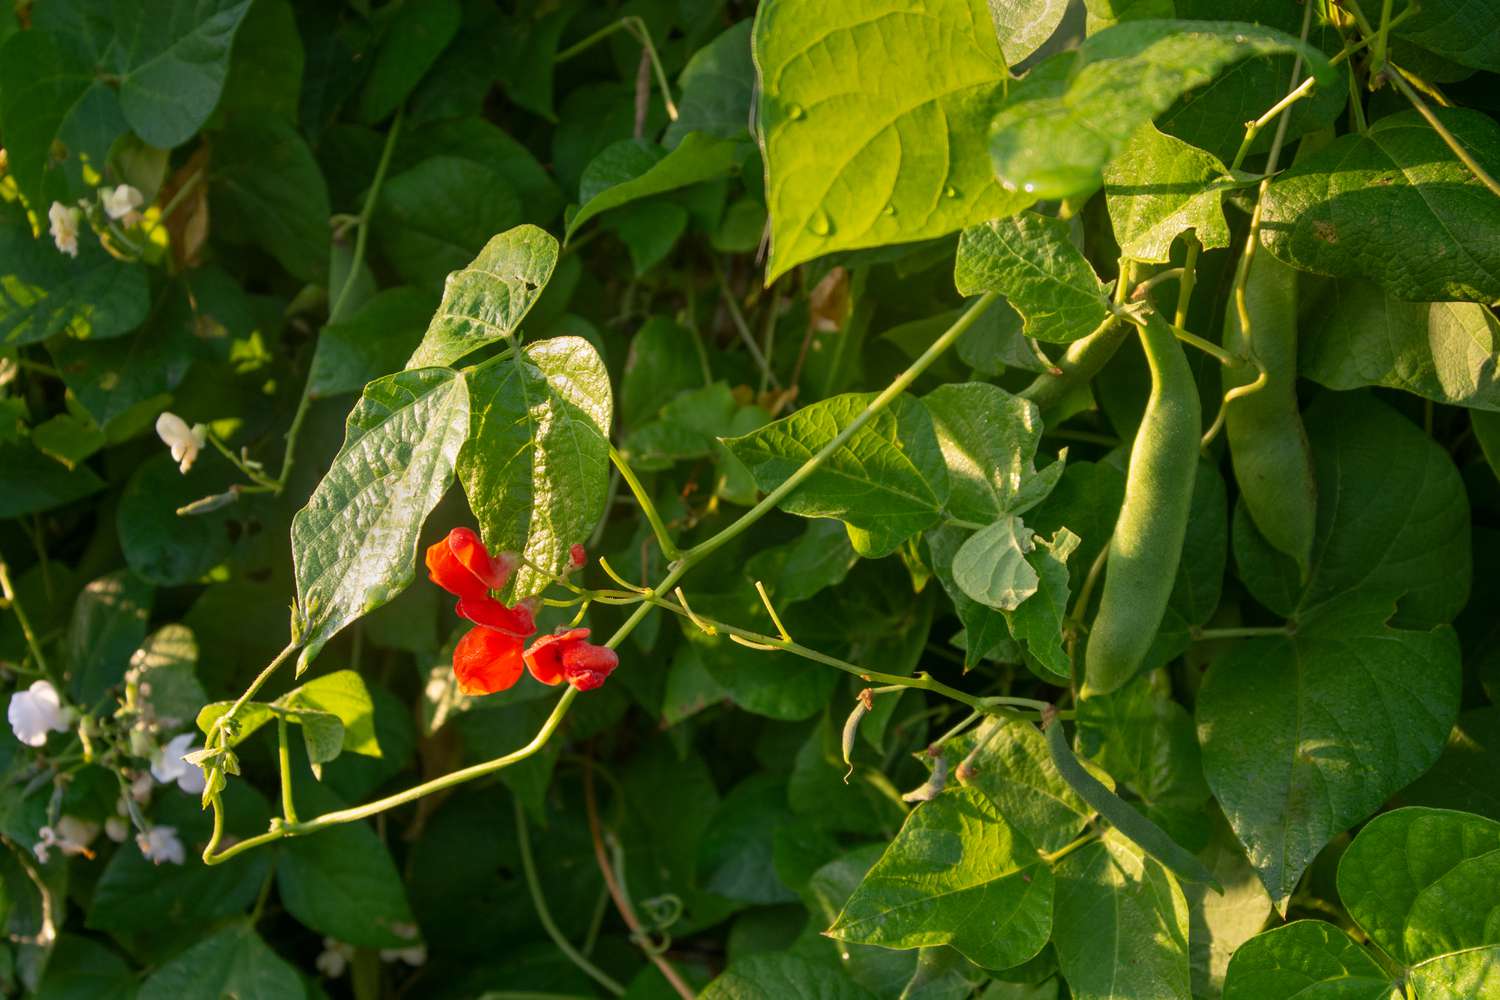 Scharlachrote Stangenbohnenpflanze mit roten Blüten am Ende des Stängels und grünen Bohnenschoten